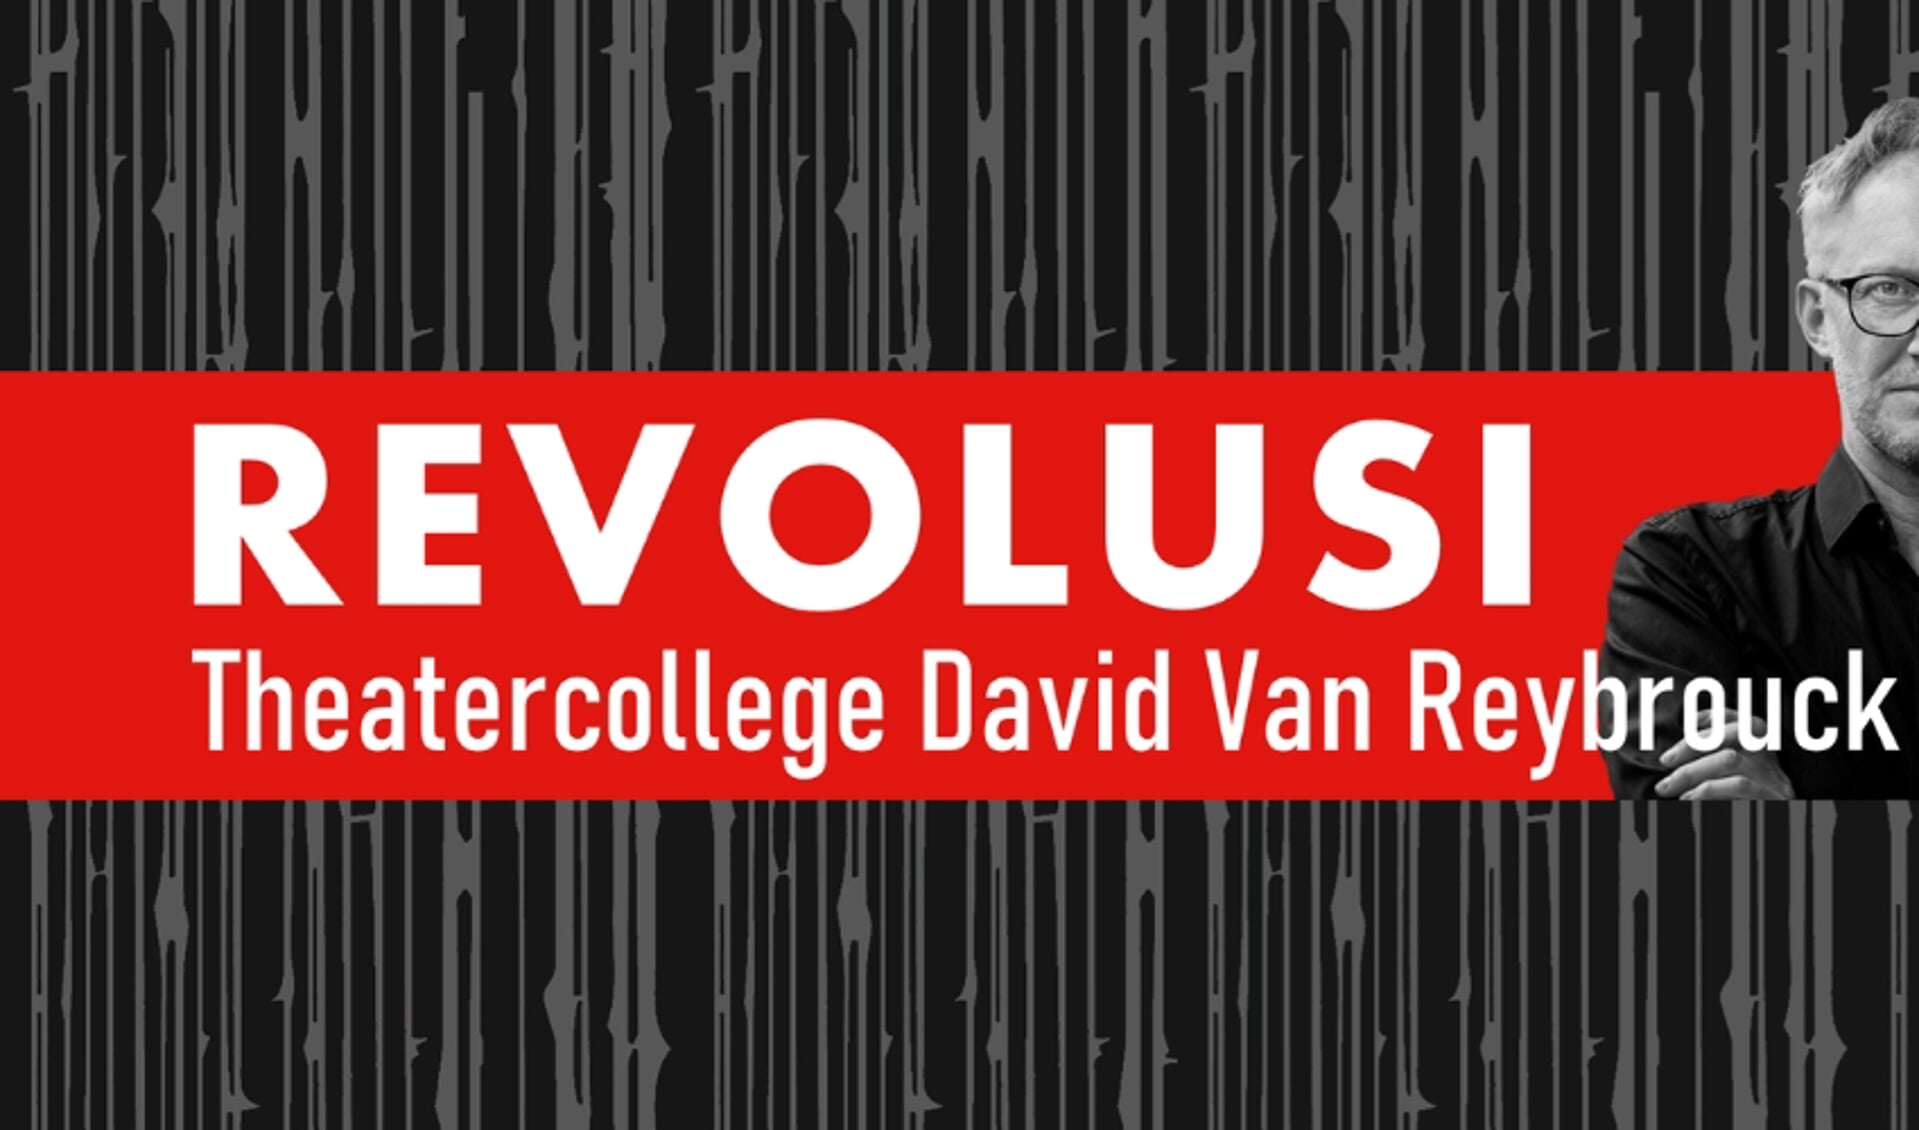 David van Reybrouck